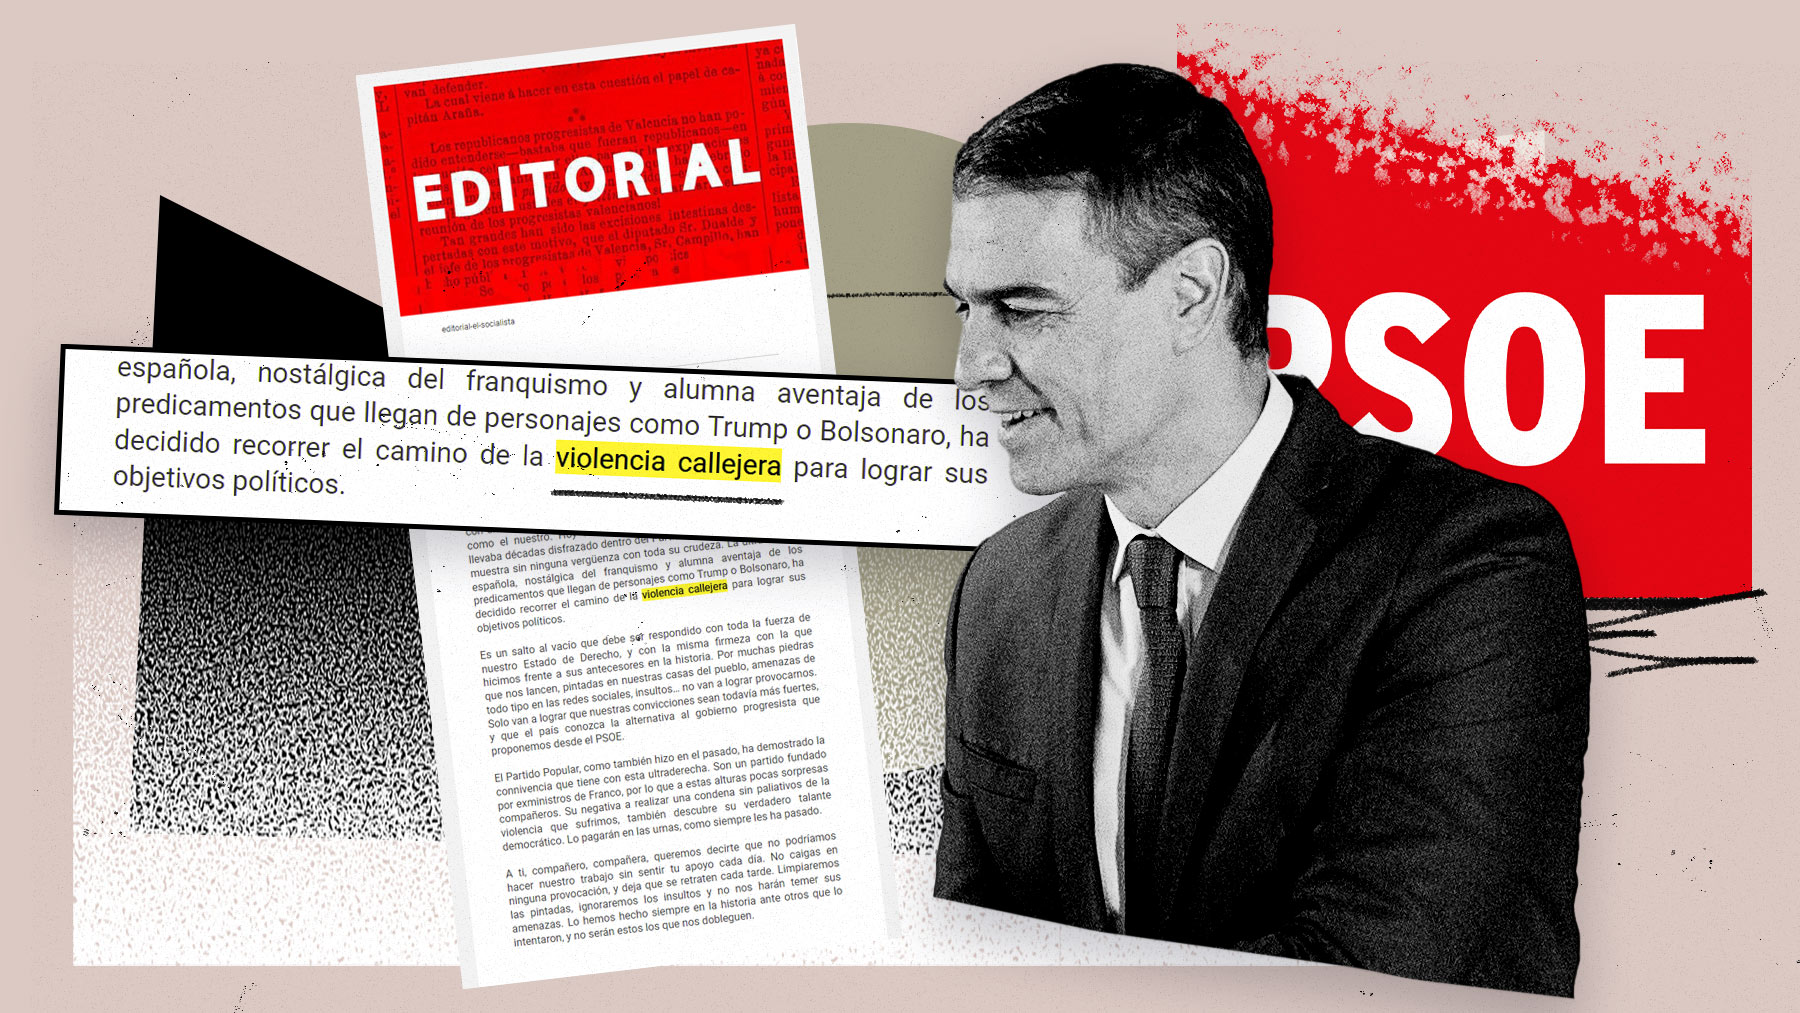 Comunicado oficial del PSOE lanzado por la cúpula de Pedro Sánchez cargando contra los que se oponen a la amnistía.